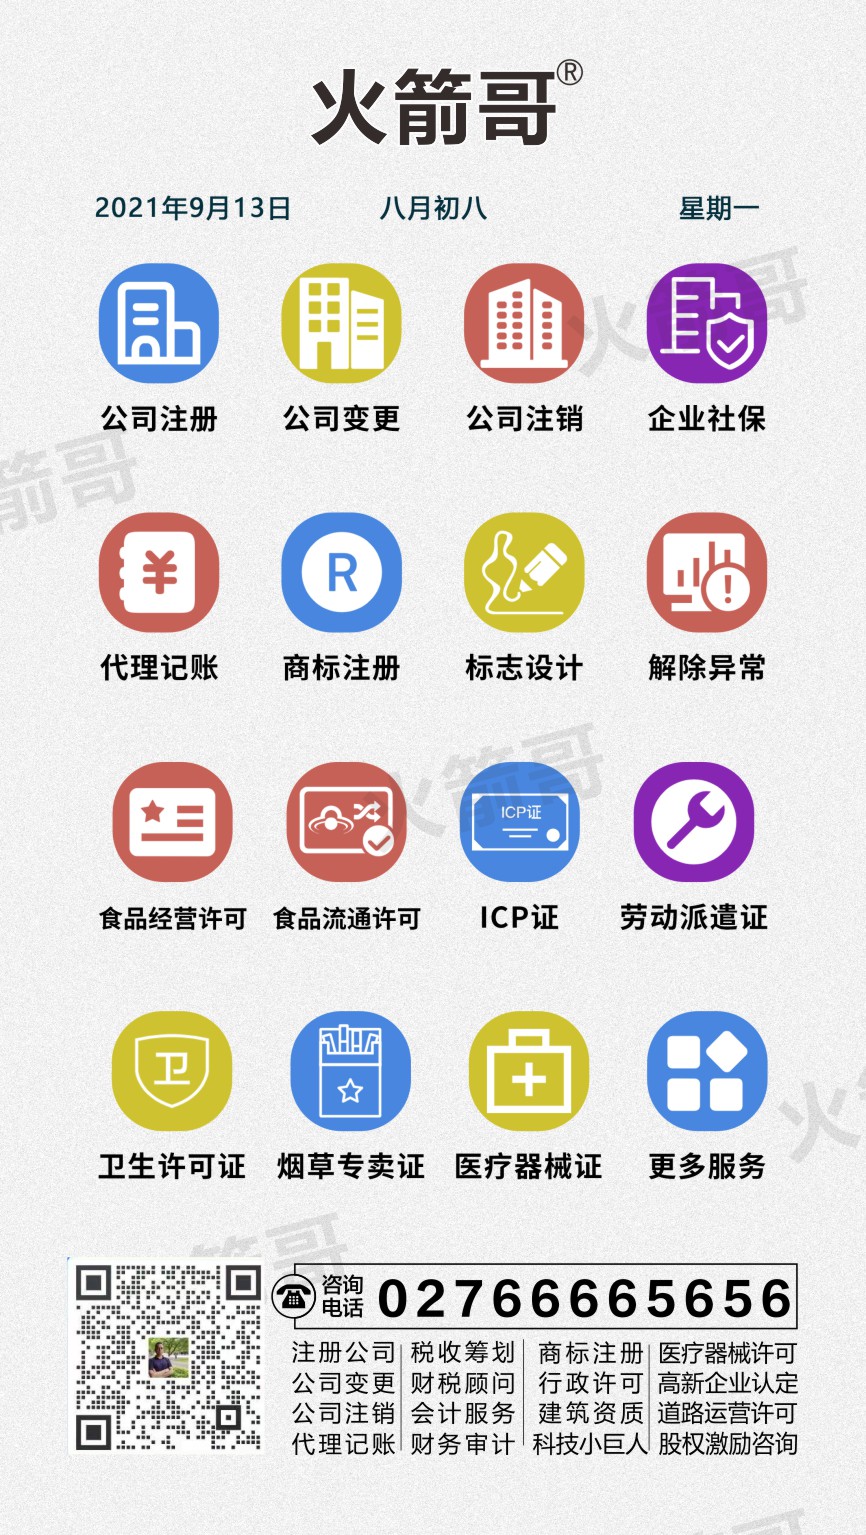  武汉光谷如何网上变更公司经营范围